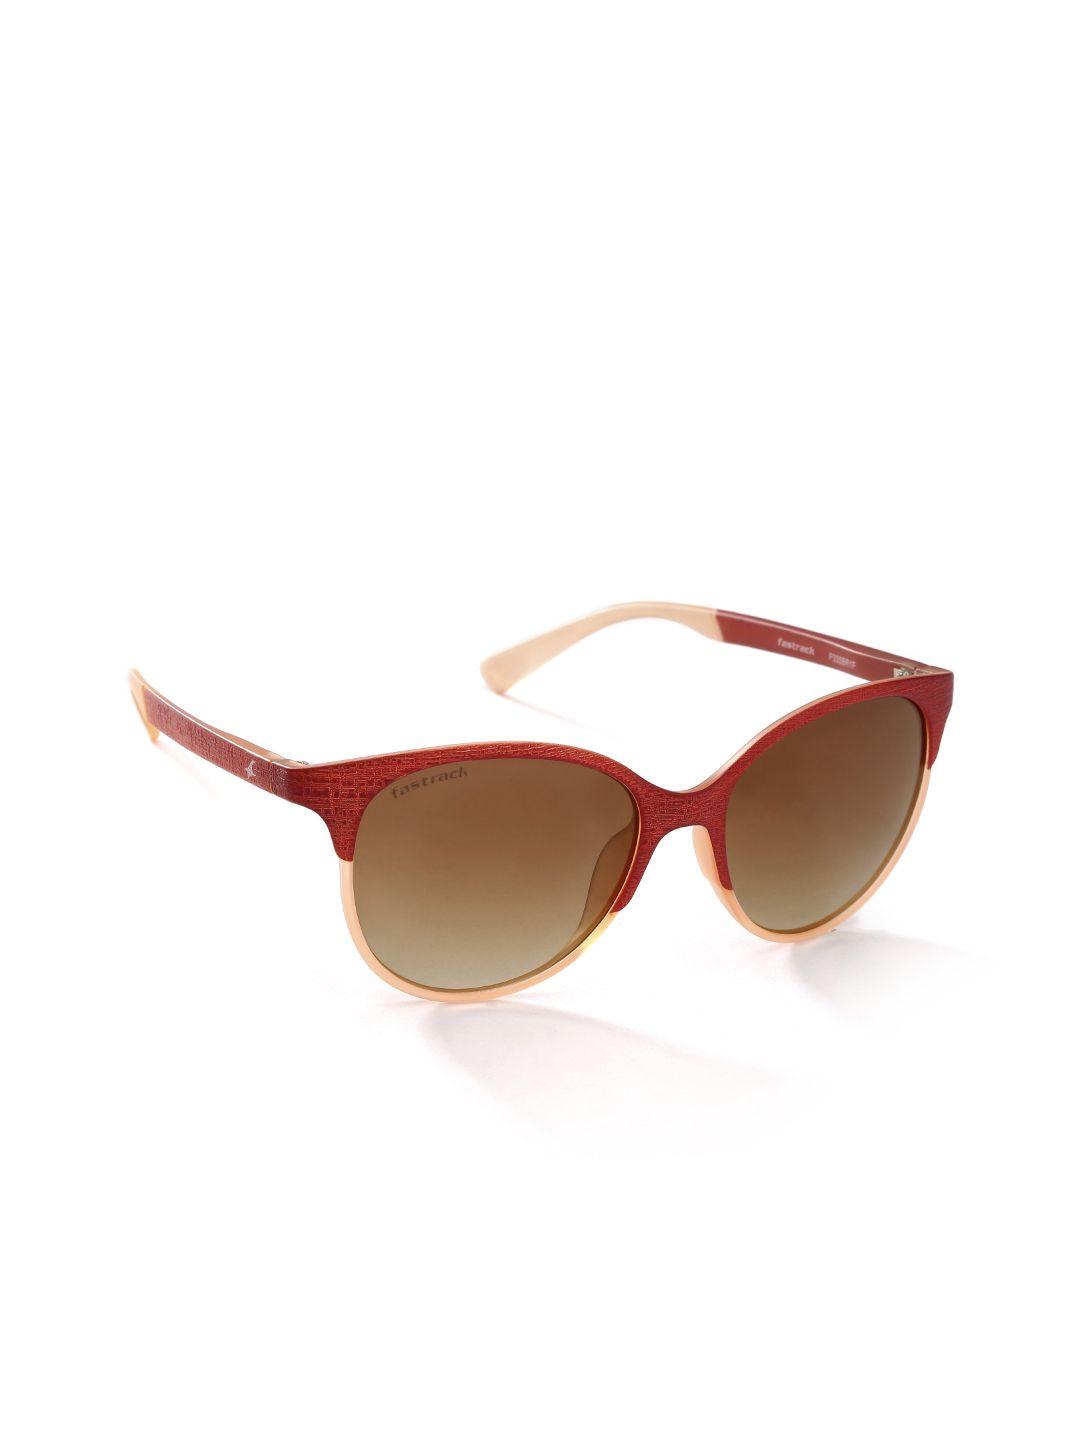 fastrack-women-gradient-sunglasses-p335br1f